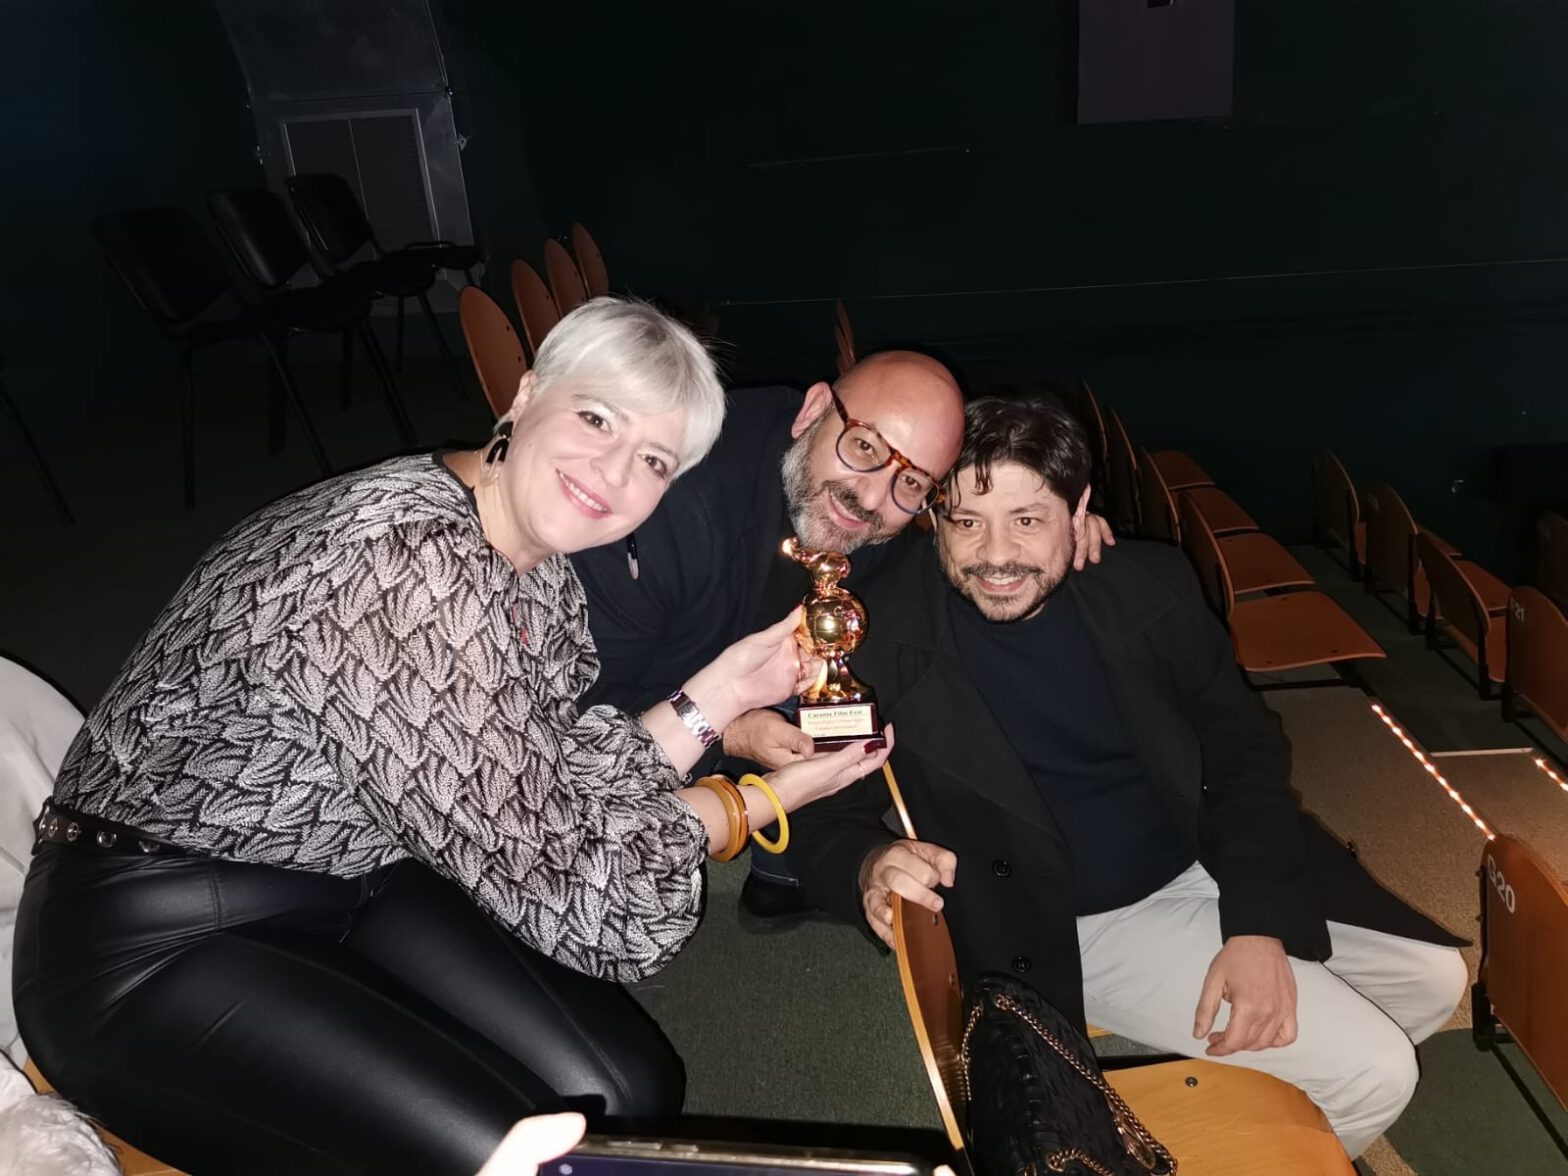 Super Jesus vince il premio come “miglior corto italiano” al Catania Film Fest 2022